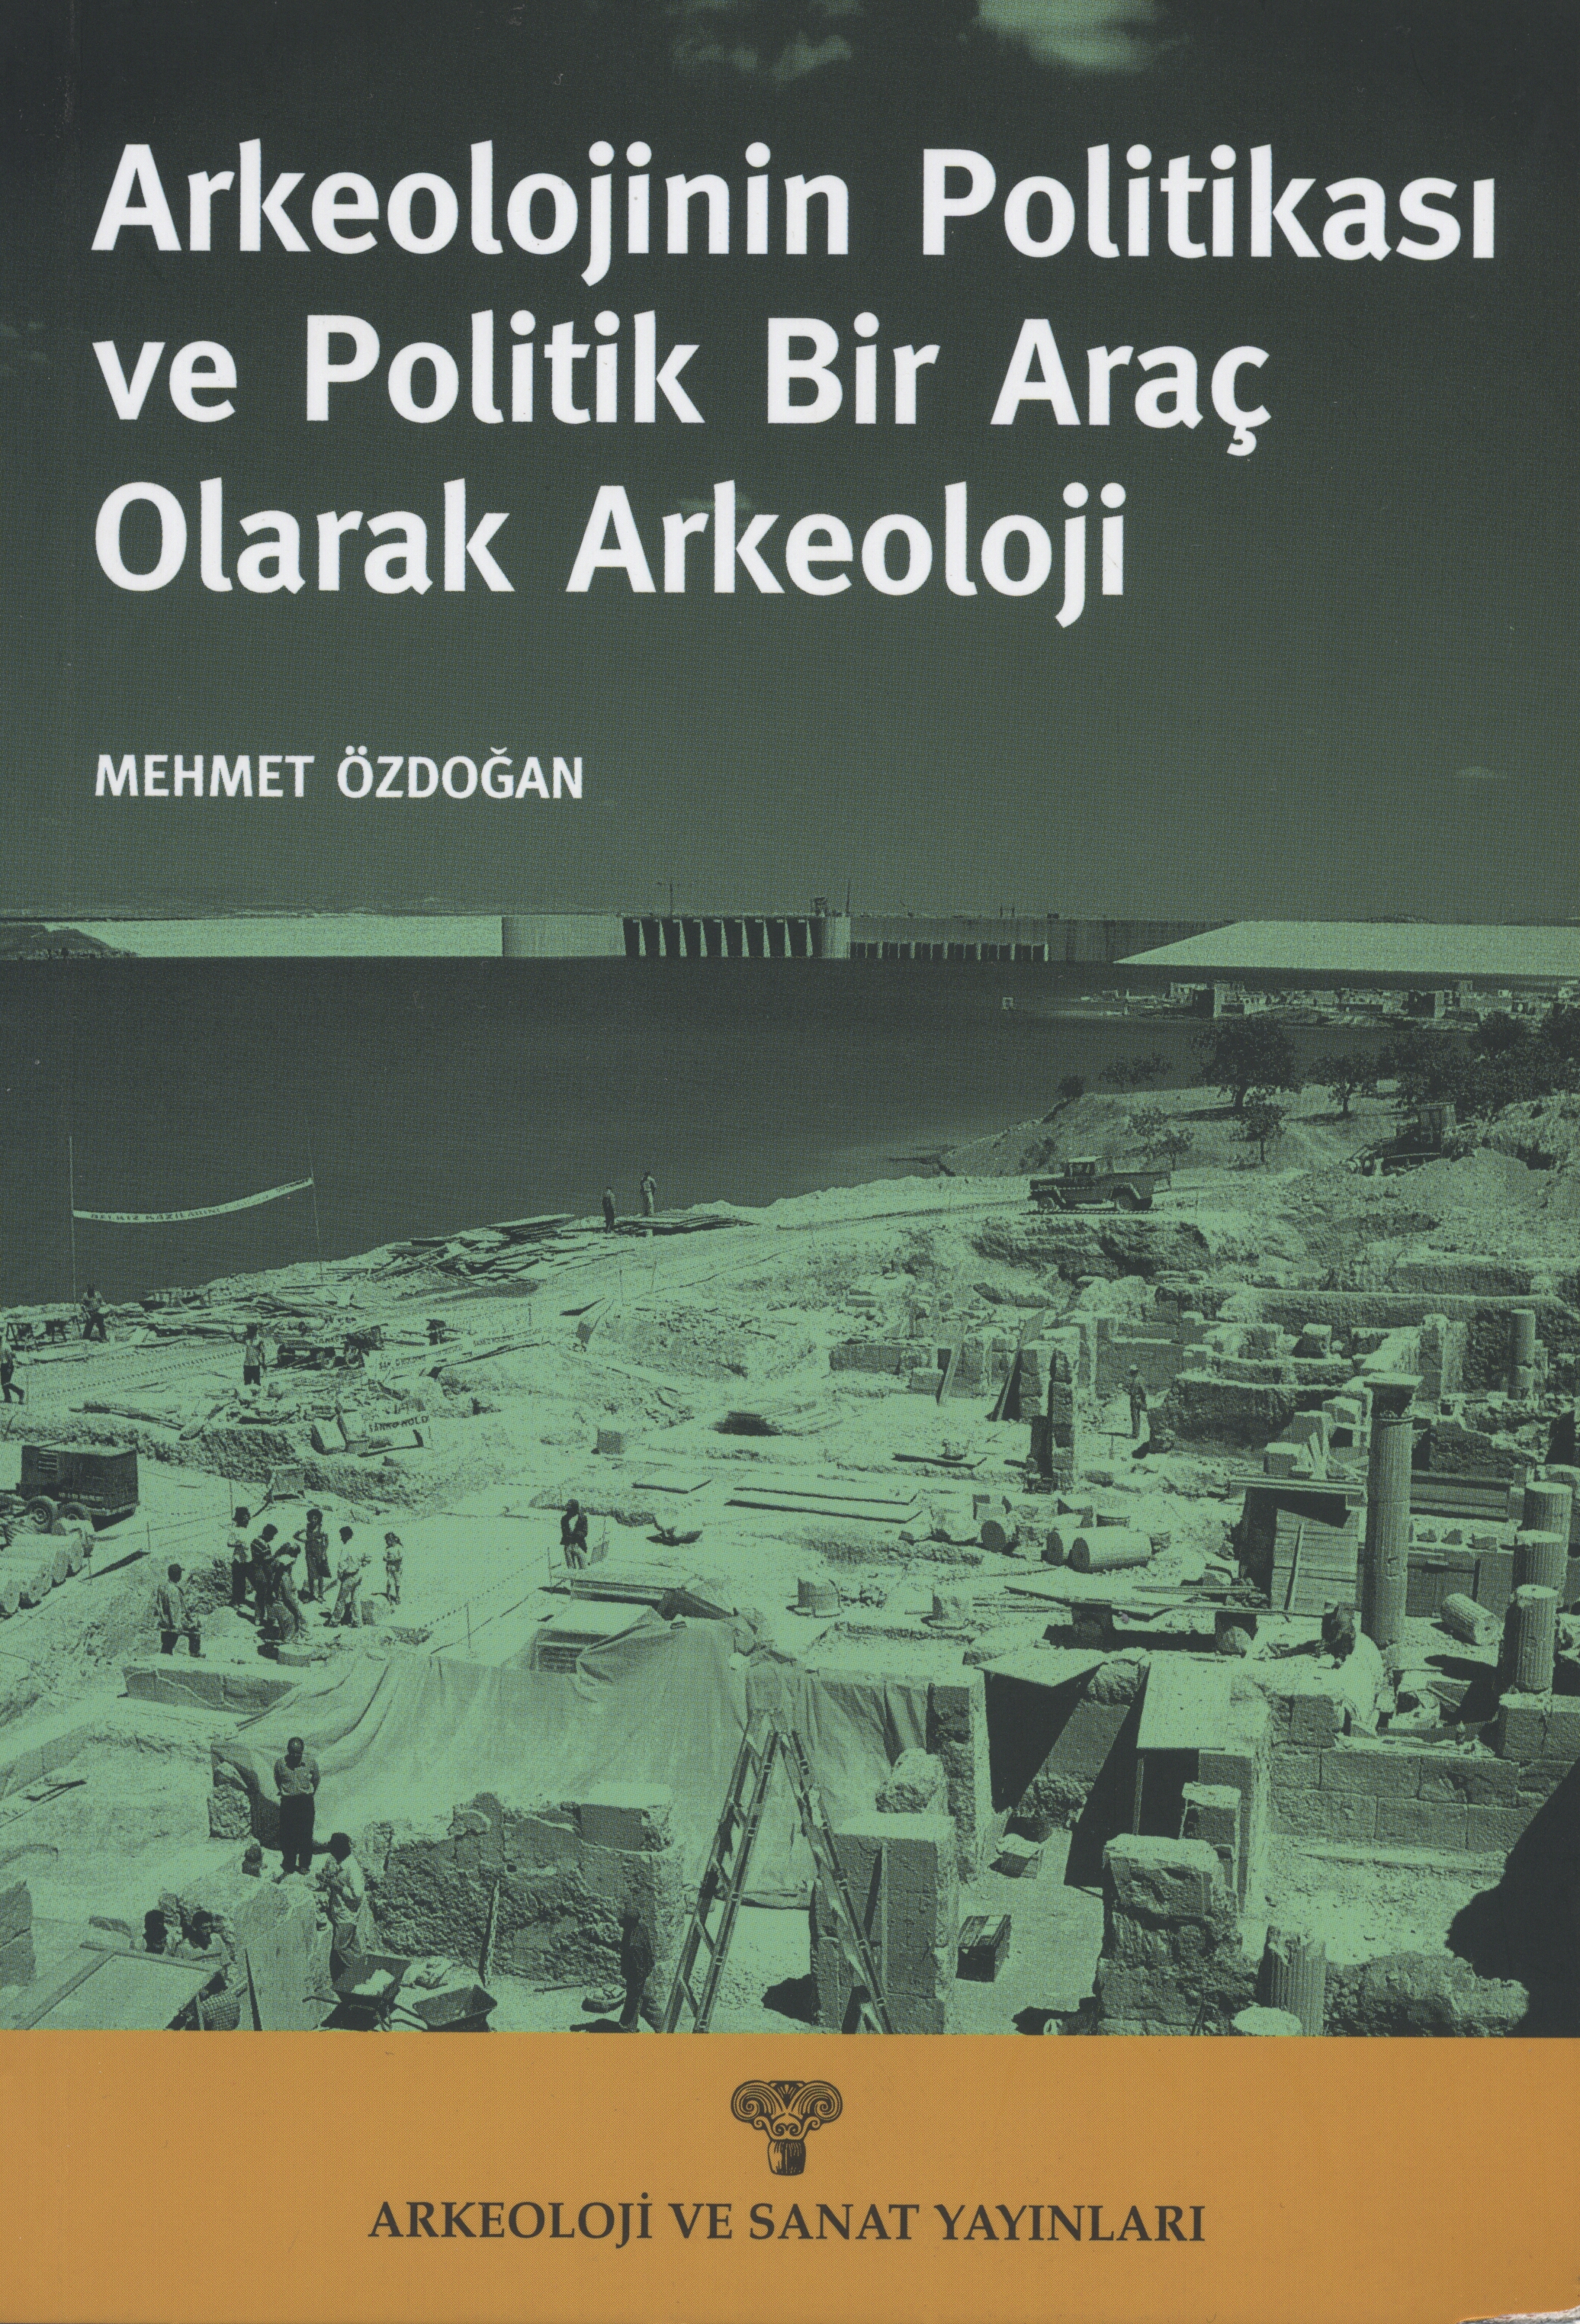 Mehmet Özdoğan "Europeanization and Tolerance in Turkey: The Myth of Toleration" - Palgrave Macmillan - 8 Nisan 2013